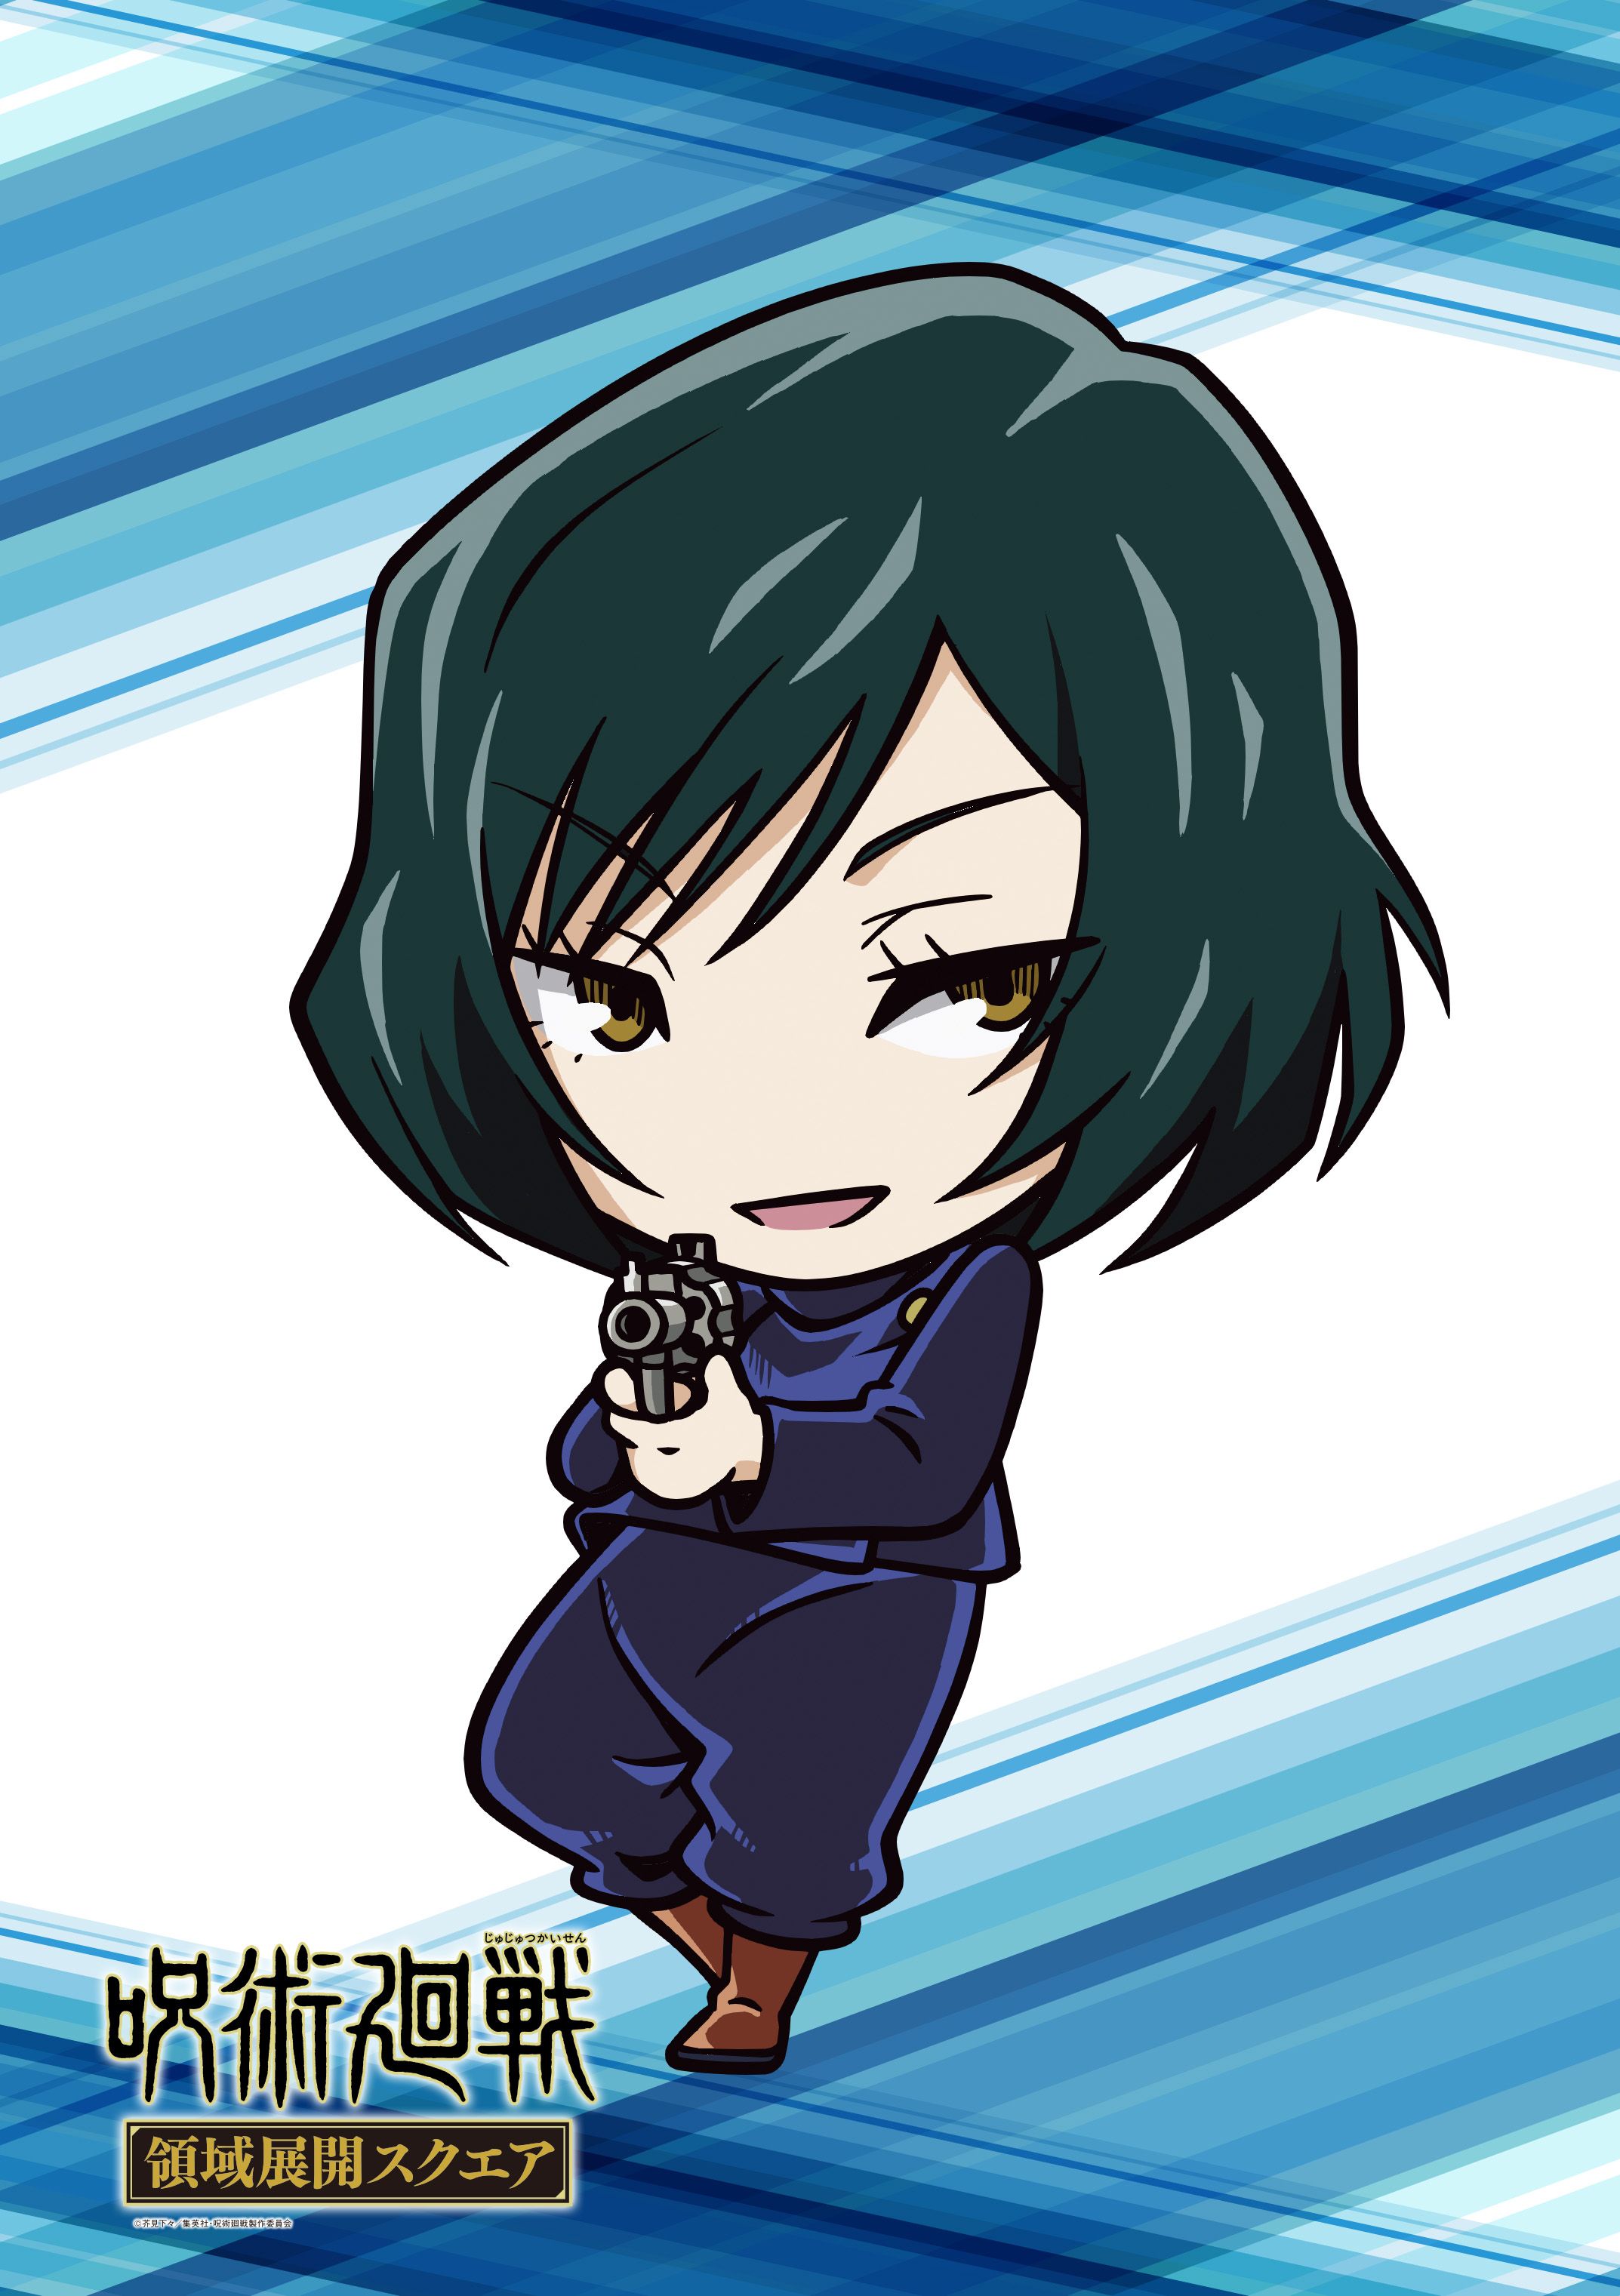 Zenin Mai Kaisen. Anime Image Board